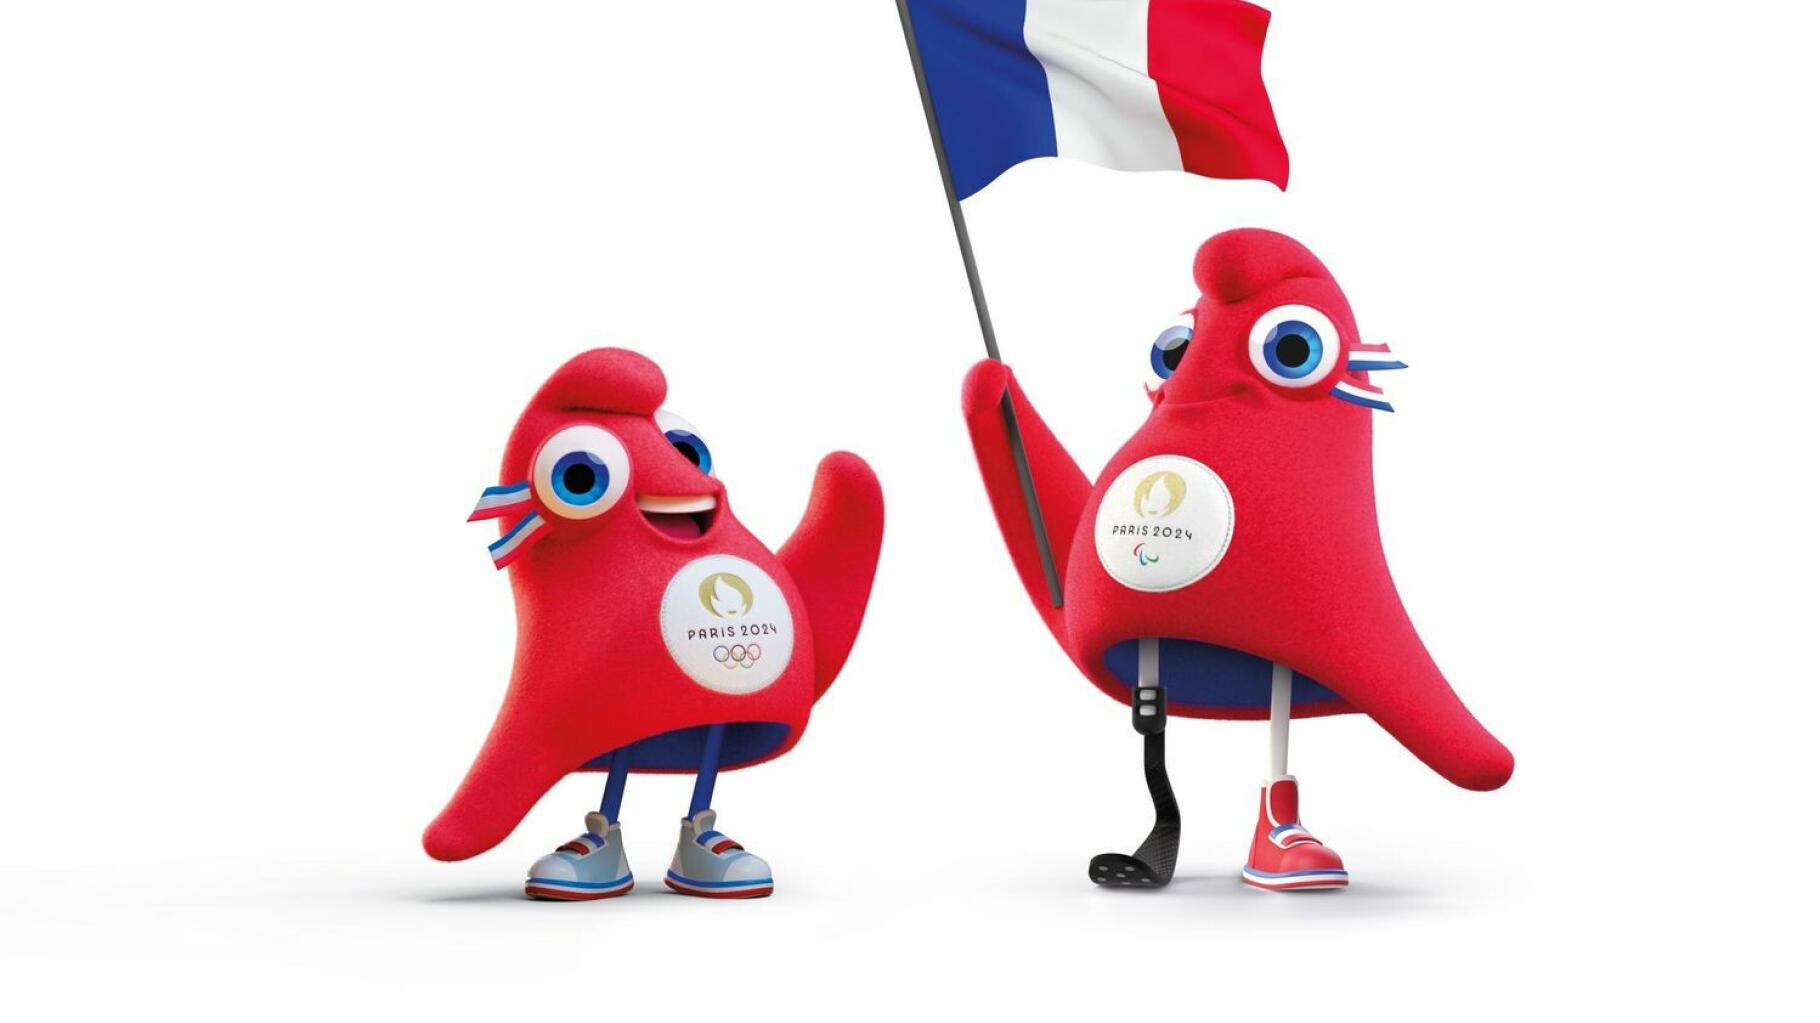 JO 2024 : Polémique autour du logo de Paris 2024 – Sport & Société